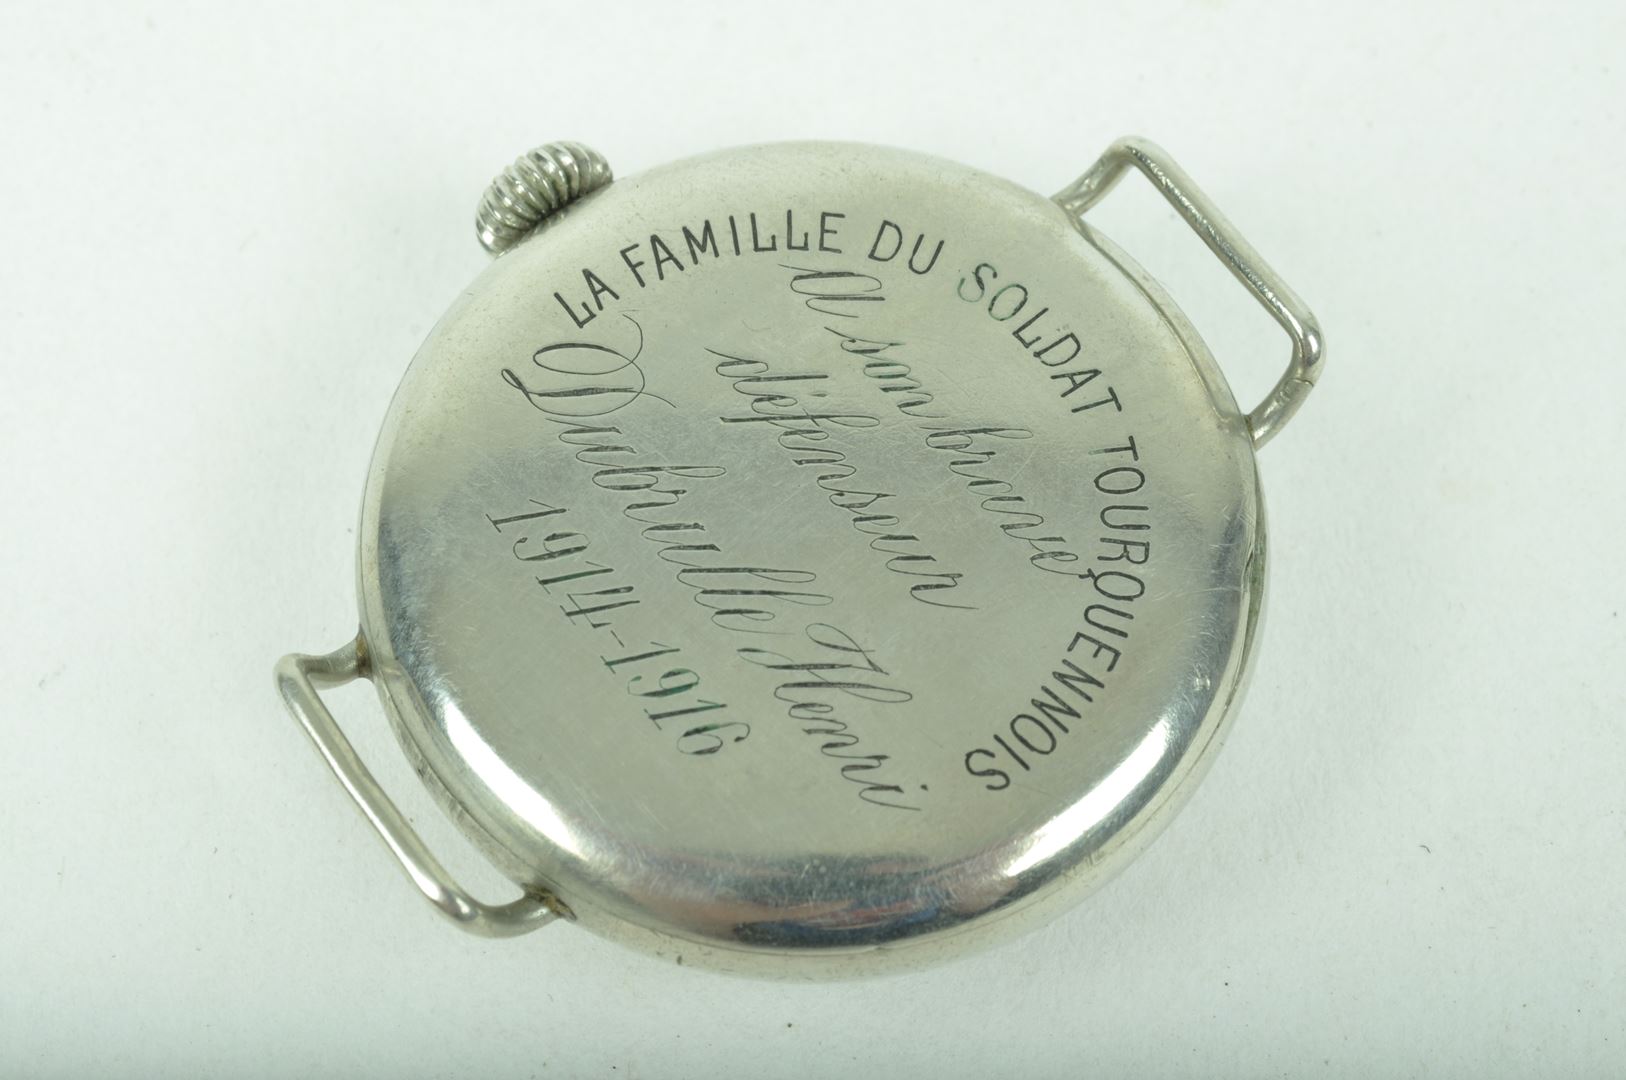 Rare montre “hommage au soldat Dubrulle” / Famille du soldat Tourquennois